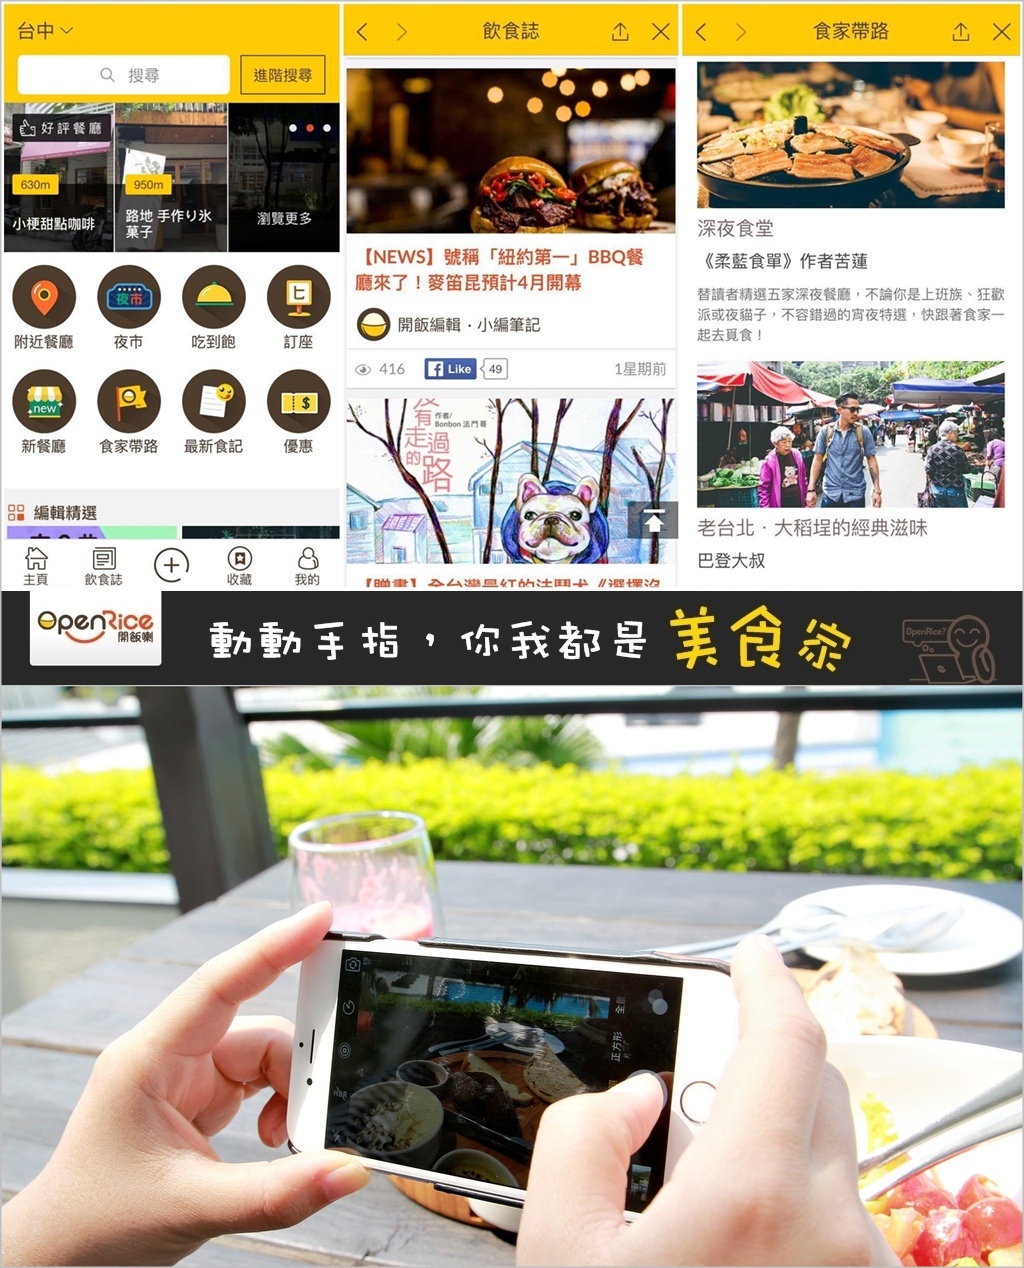 OpenRice台灣開飯喇：台灣餐廳指南！一次掌握最新食記.最真實的大眾評價！食家帶路.飲食誌就像是電子書美食雜誌一般，質感內容好豐富！你我都可動手上傳照片.評價美食.人人都是美食家～